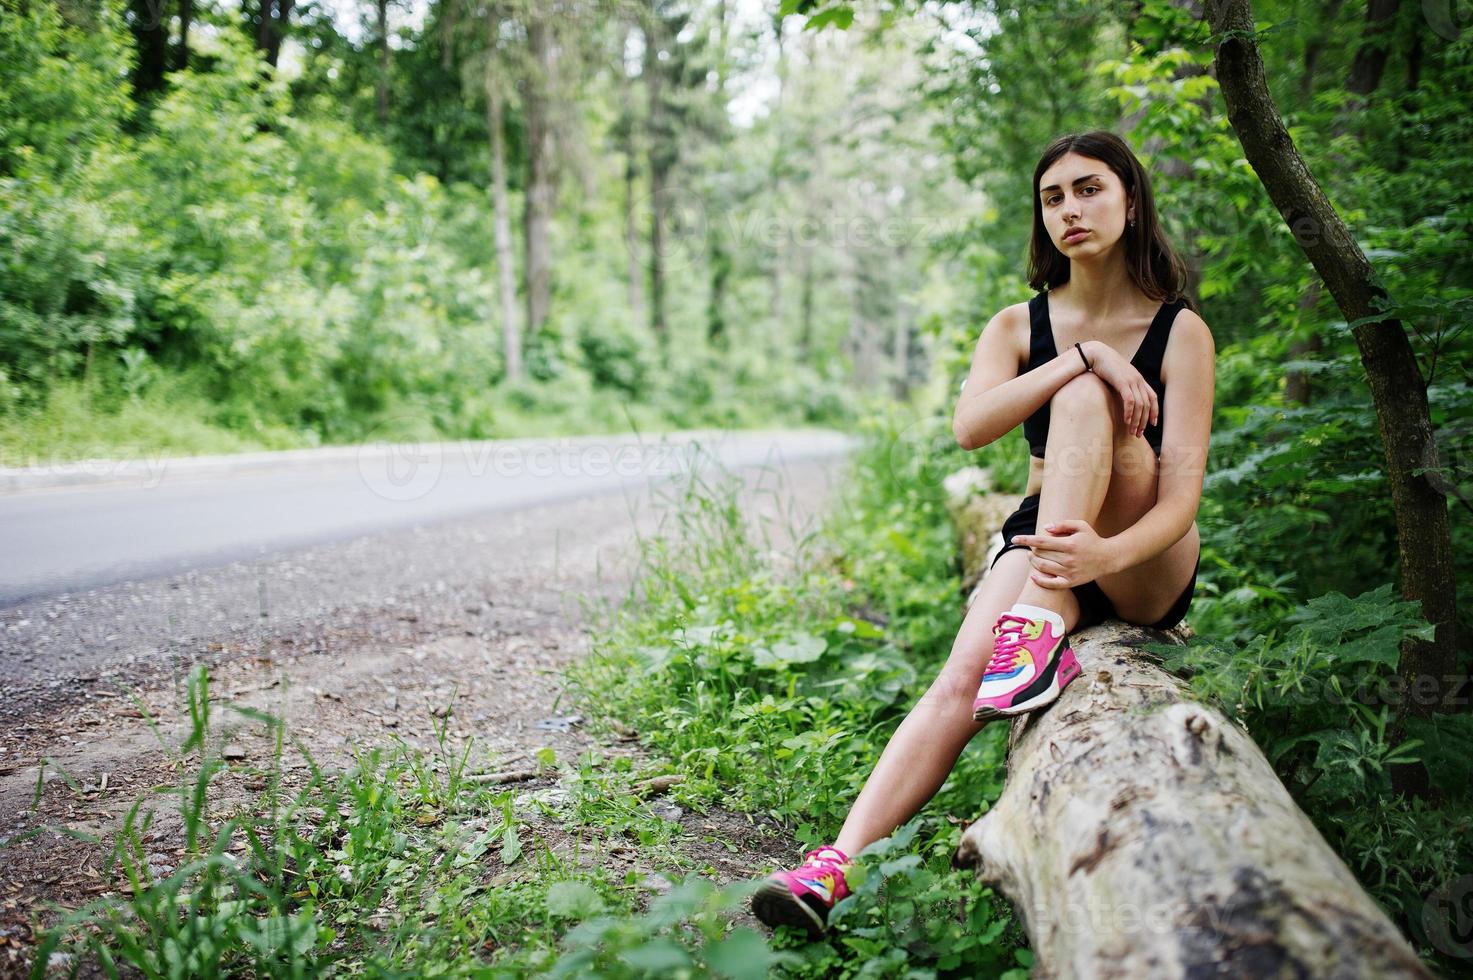 sport meisje bij sportkleding met rust in een groen park na training in de natuur. een gezonde leefstijl. foto